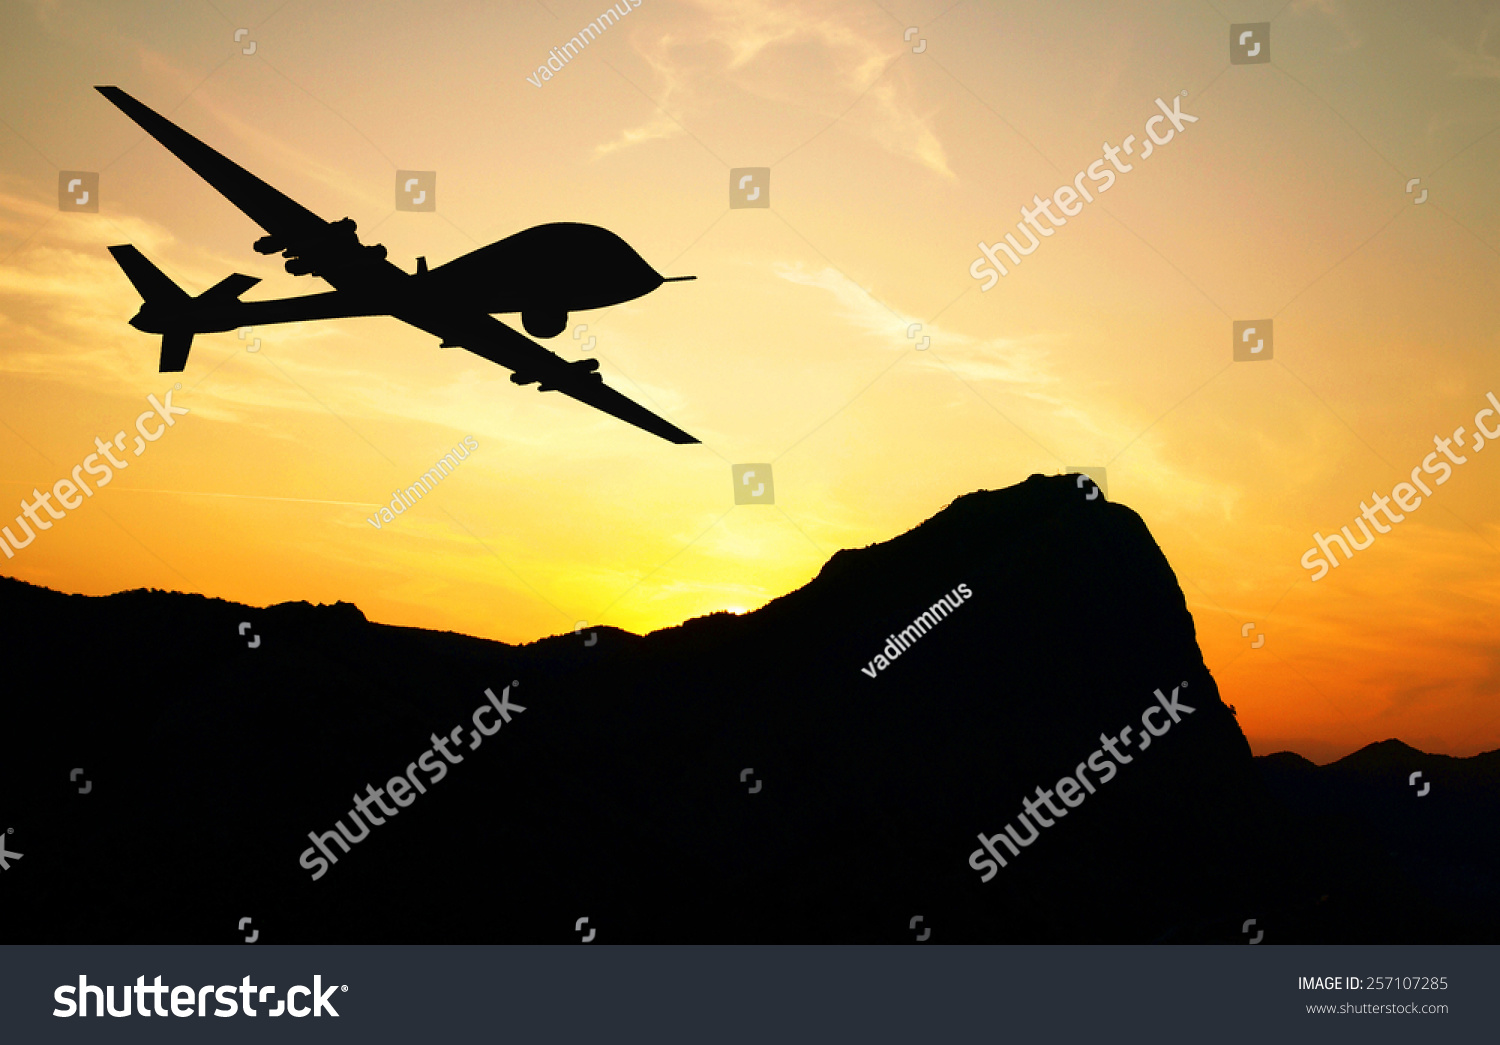 日没の背景に山を飛ぶドローン イラスト の写真素材 今すぐ編集